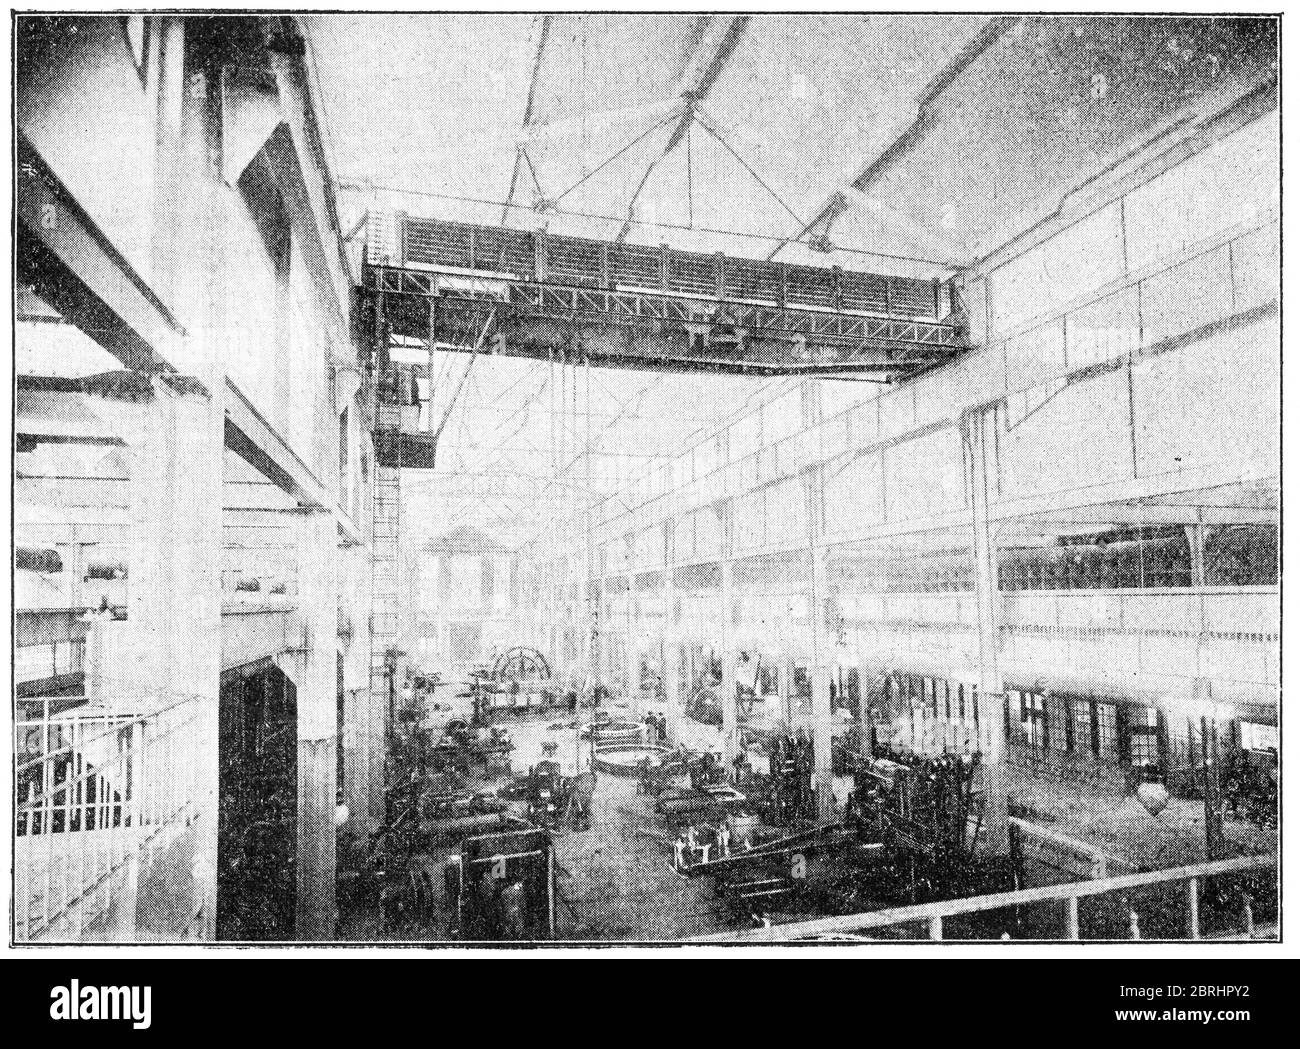 Atelier d'assemblage à l'usine Ganz & Co de Ratibor (Raciborz, Pologne moderne). Illustration du XIXe siècle. Fond blanc. Banque D'Images